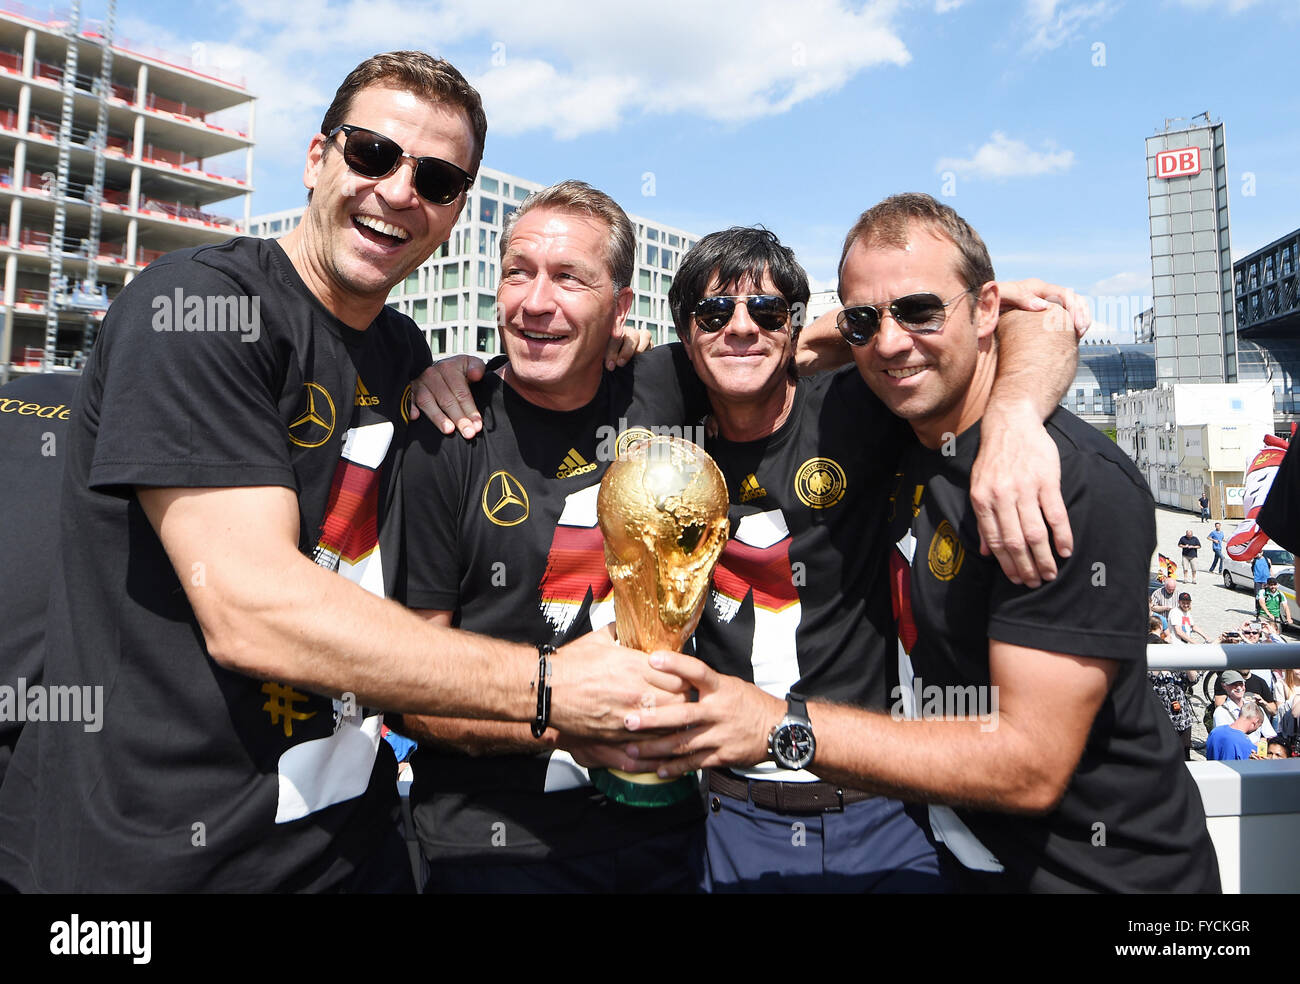 Reiten auf einem LKW, Empfang der deutschen Nationalmannschaft nach ihrem Sieg bei der FIFA WM 2014, Fan-Party in der Stockfoto